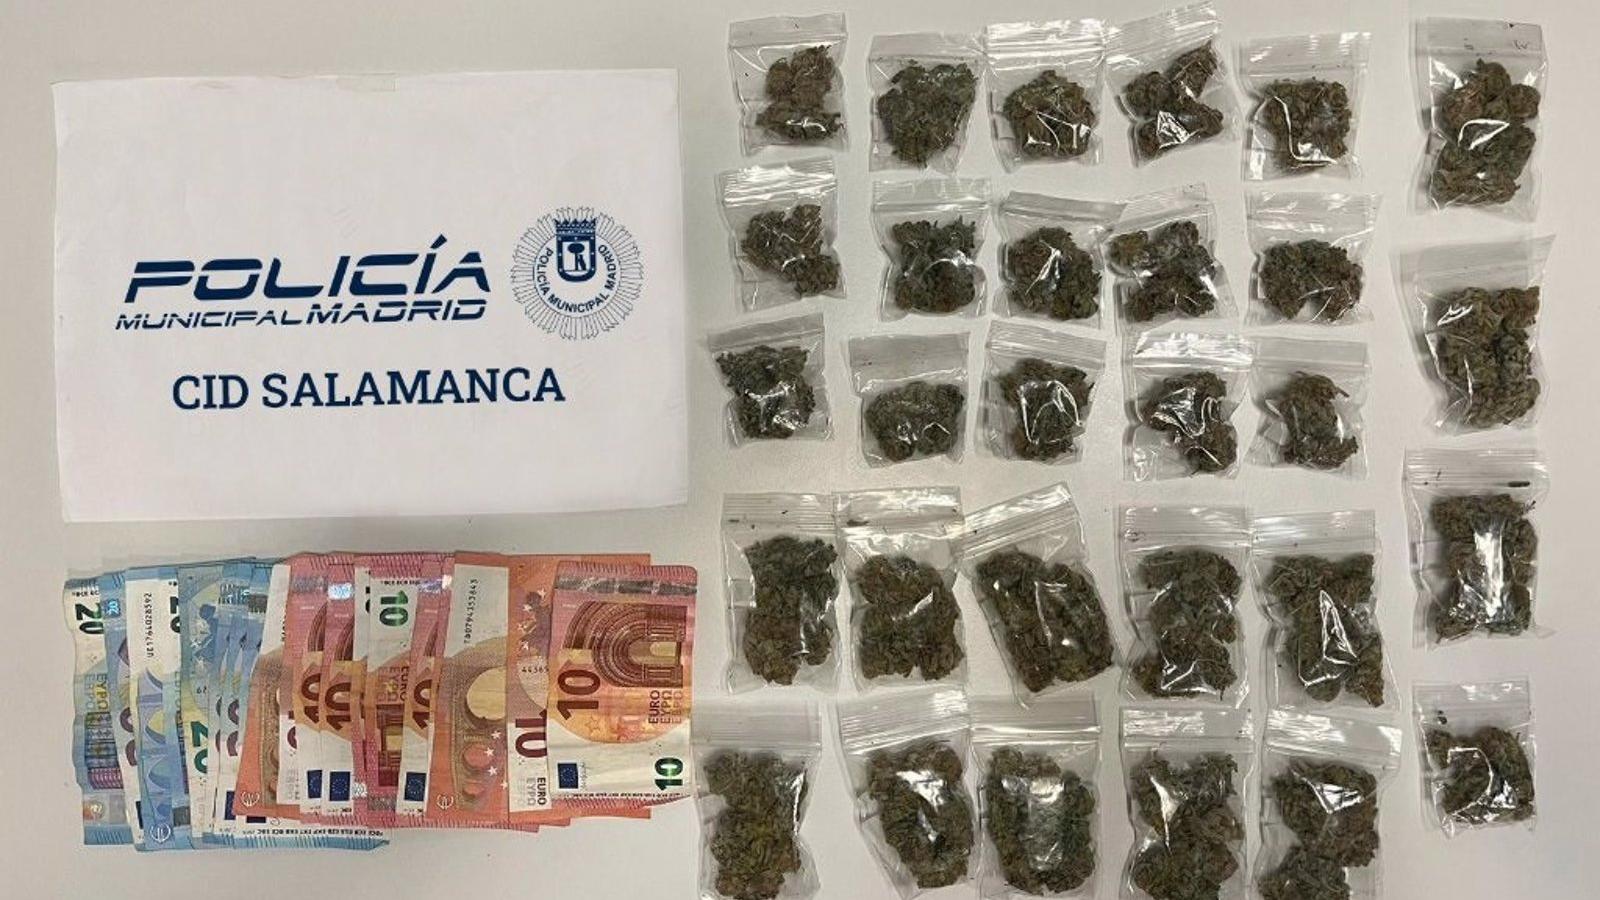  Detenido en el distrito de Salamanca con 28 bolsas de marihuana ocultas en la manga de la cazadora